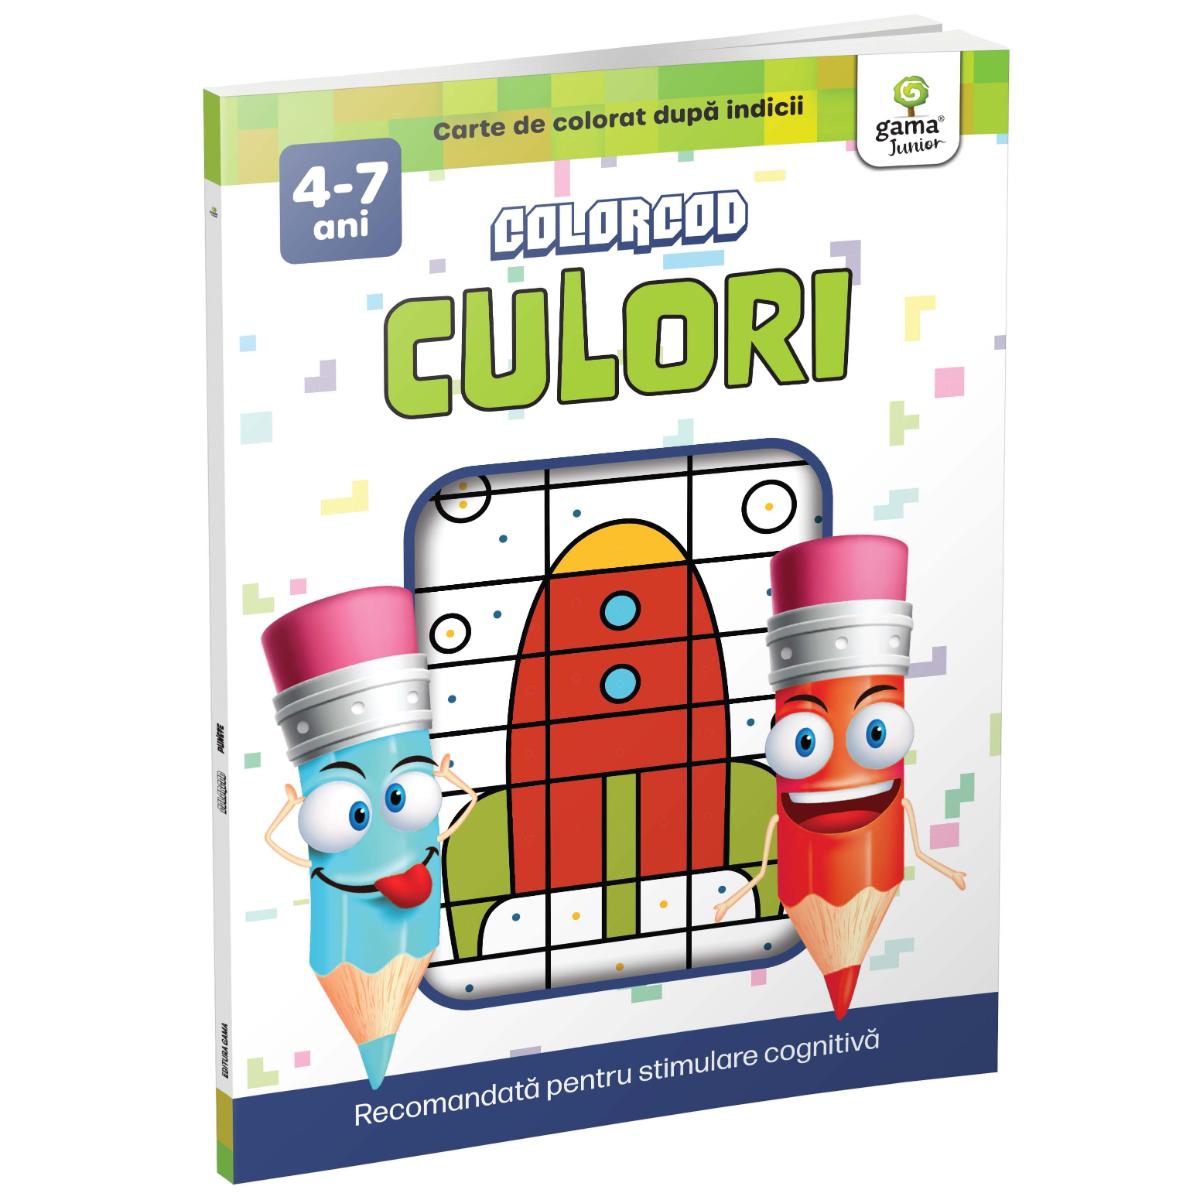 Culori, ColorCOD